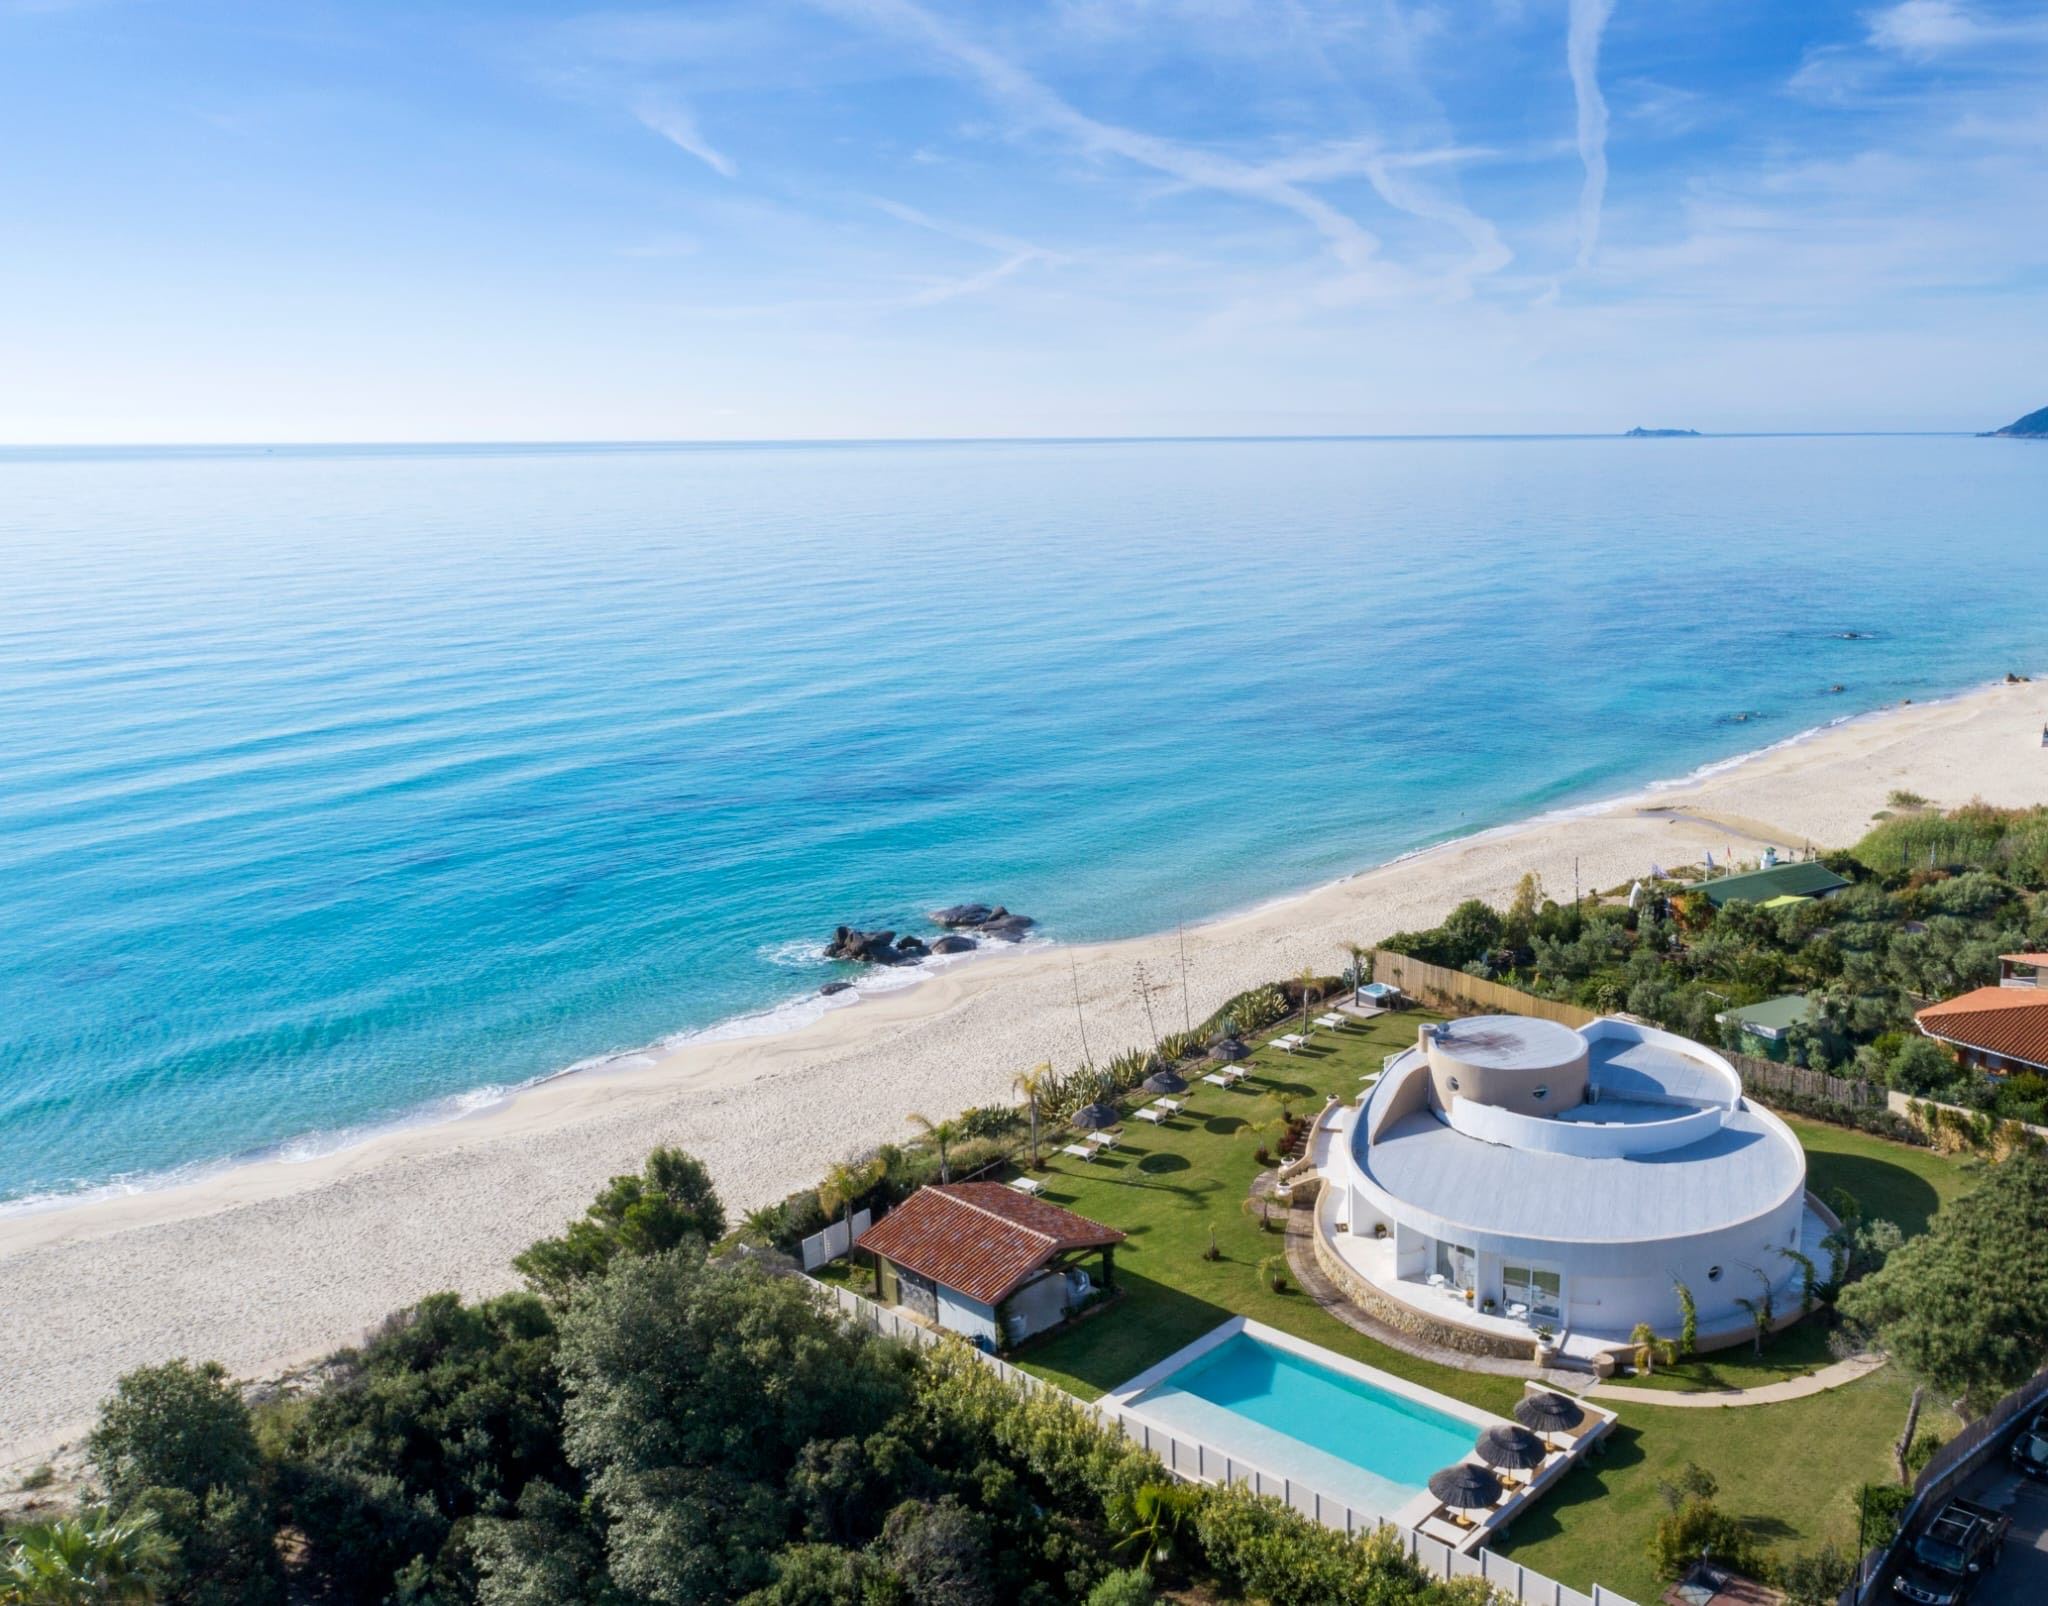 Villa Escargot, affacciato sulle acque cristalline di Costa Rei, sulla costa sud-orientale della Sardegna